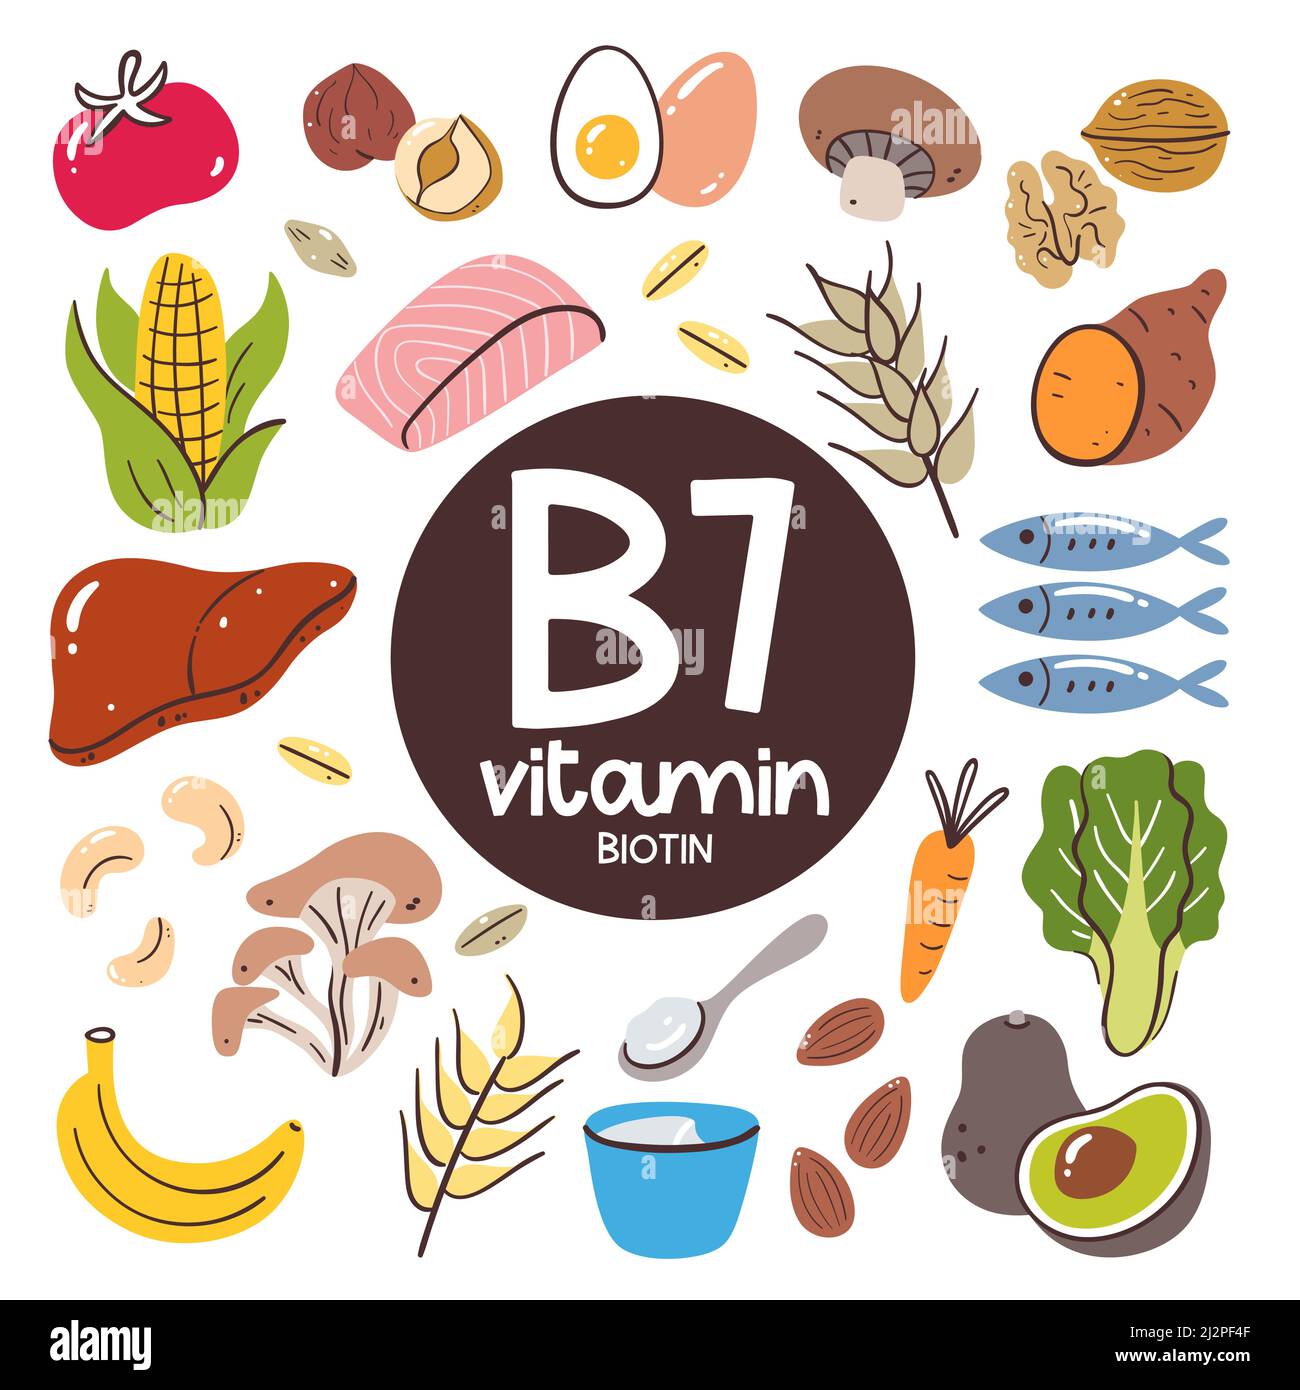 Produits alimentaires à haut niveau de vitamine B7 (Biotine). Ingrédients de cuisson. Fruits, légumes, champignons, noix, produits laitiers, poisson, foie. Illustration de Vecteur